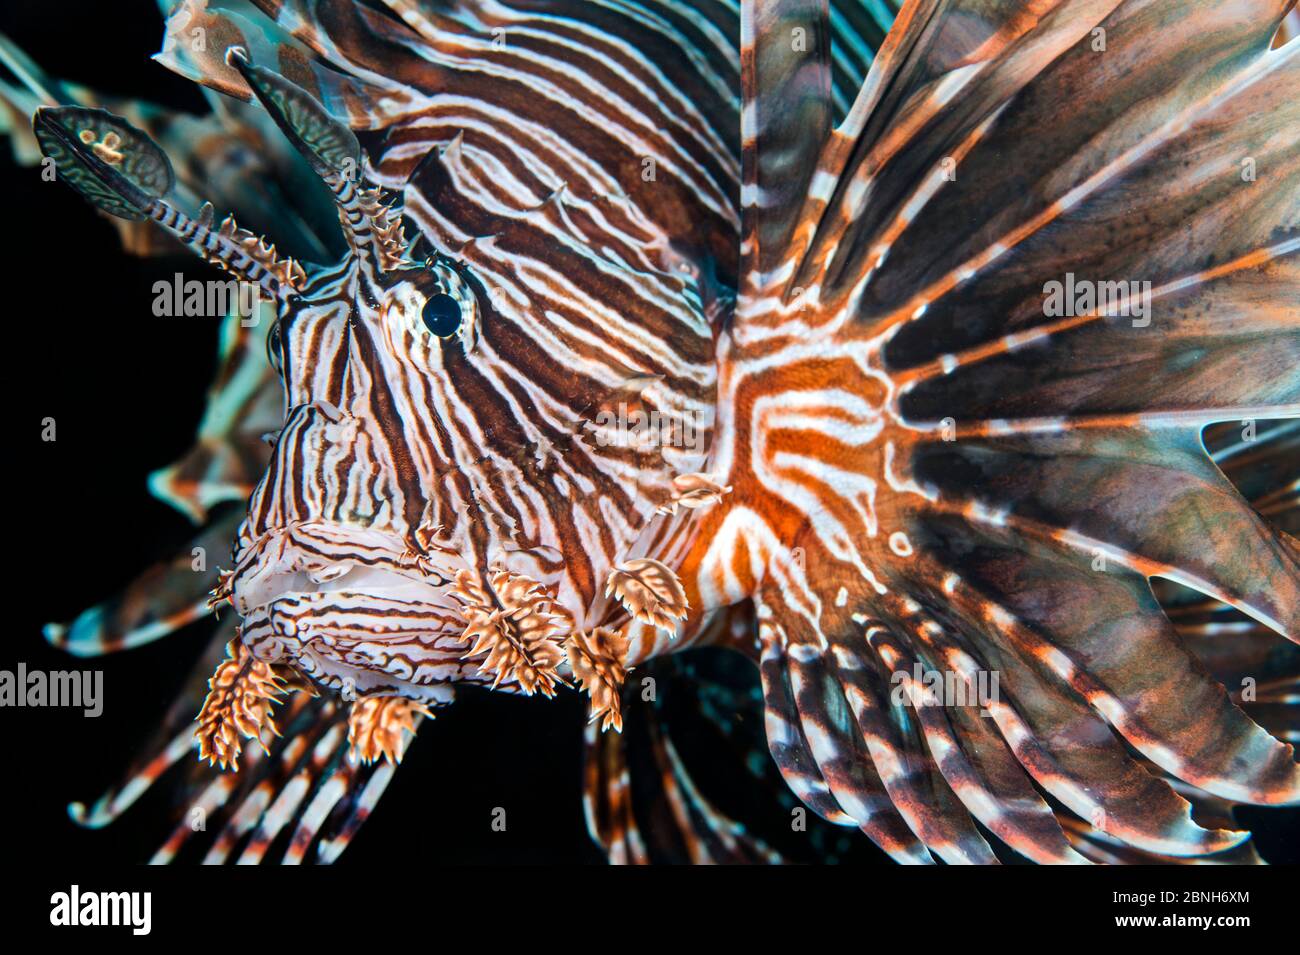 Löwenfisch (Pterois volitans) Porträt, invasive Arten in der Karibik. East End, Grand Cayman, Cayman Islands, British West Indies, Karibik. Stockfoto